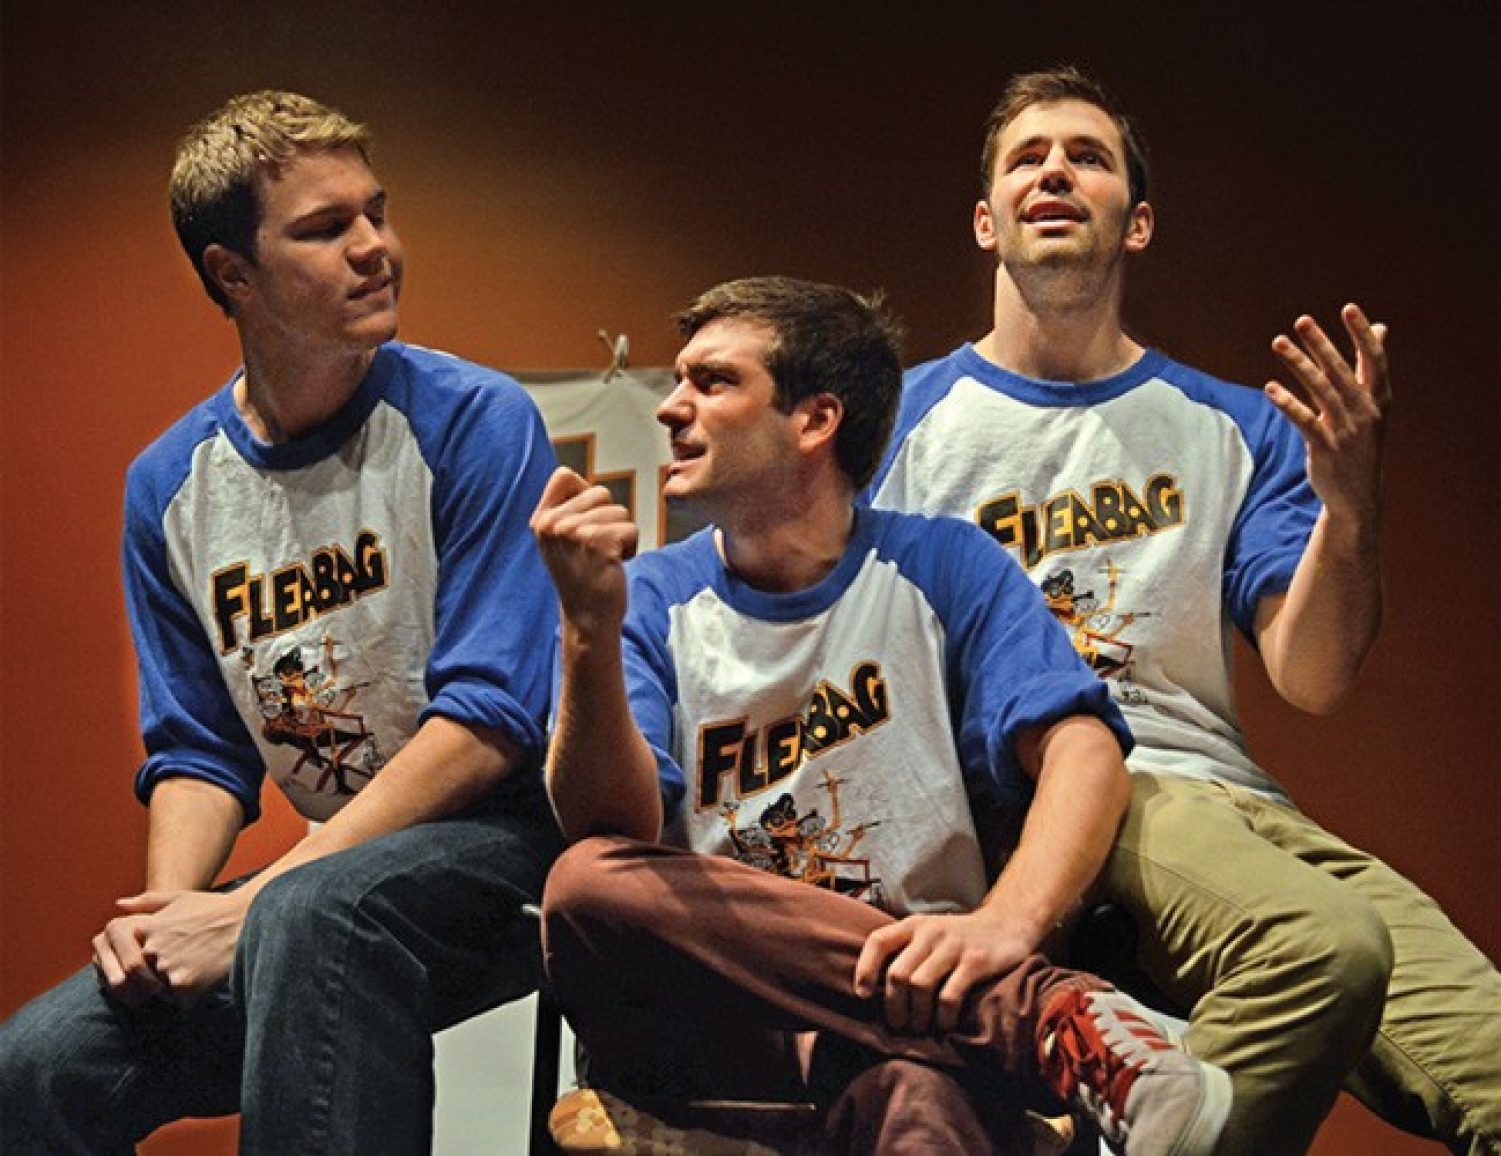 Fleabaggers performing in 2015.